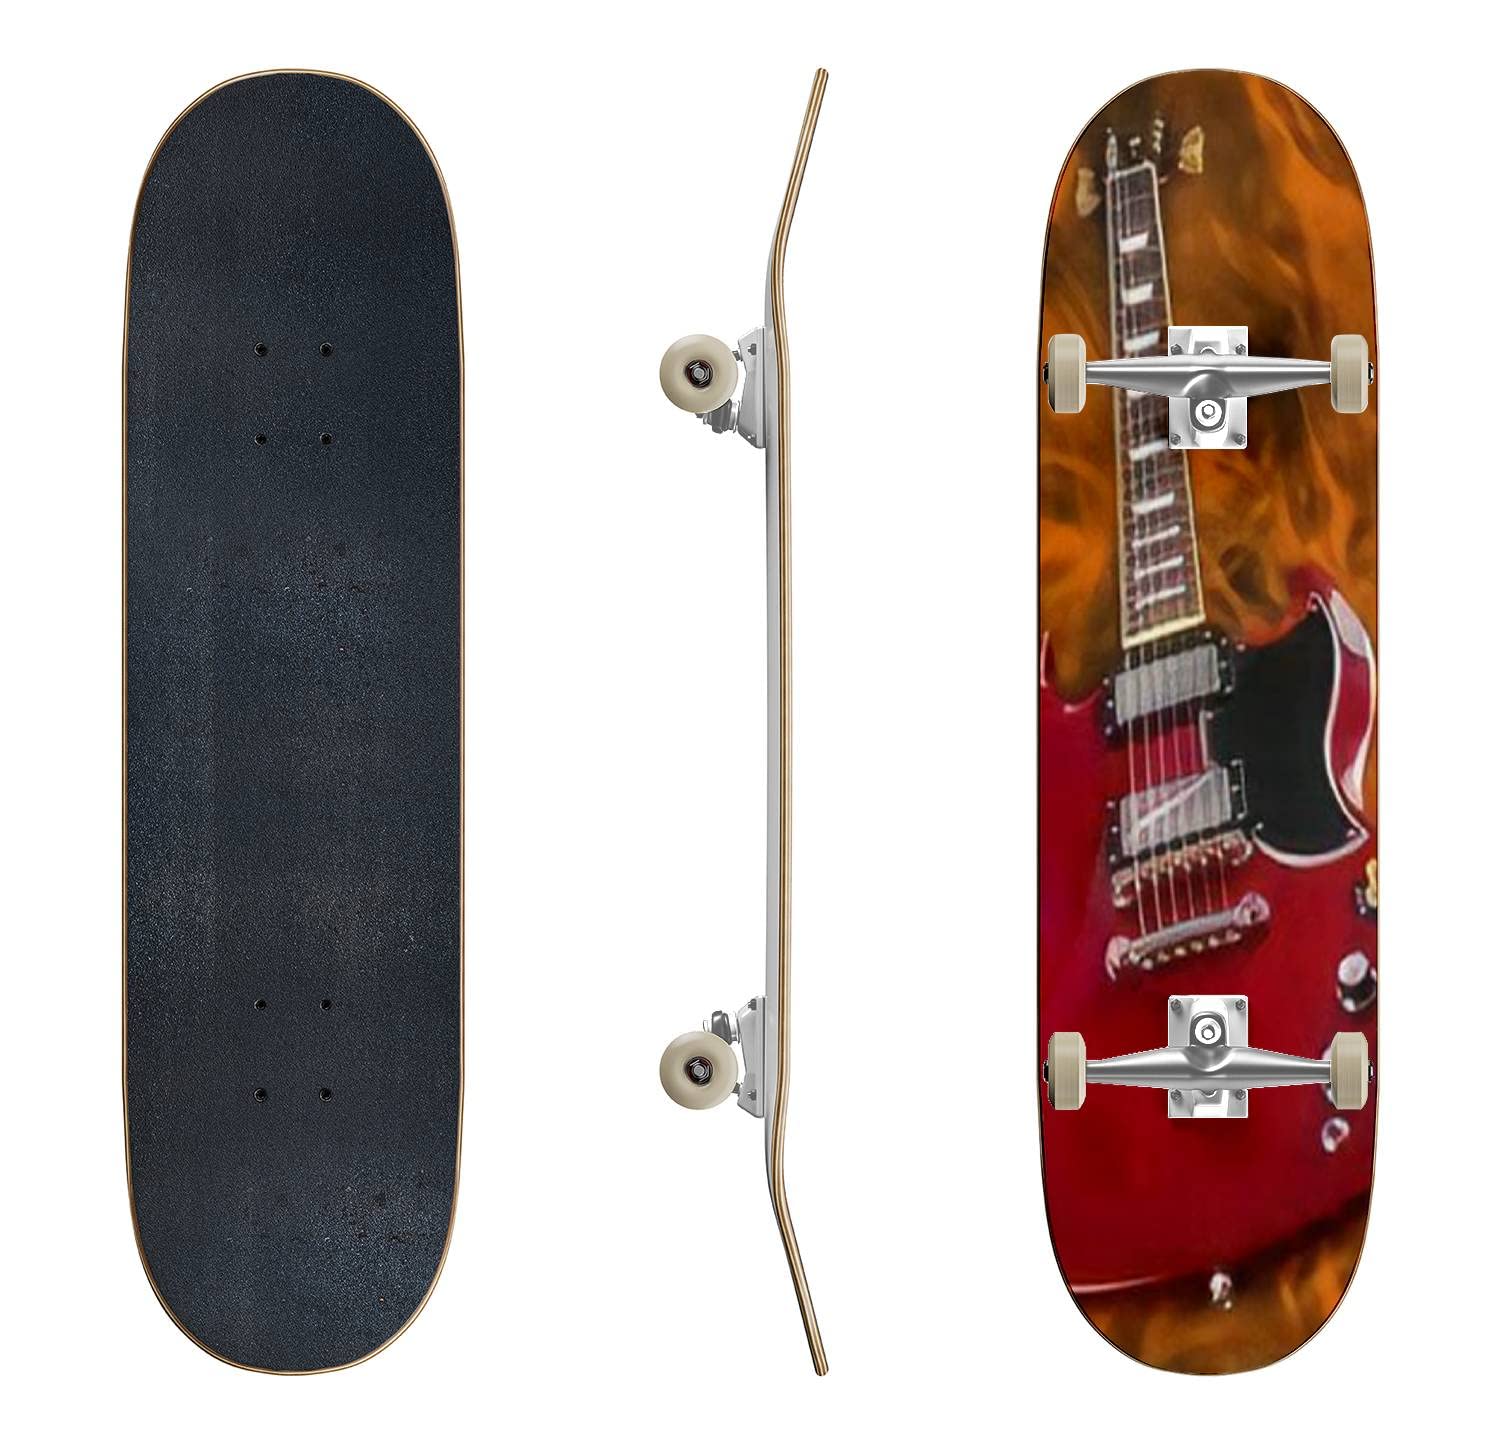 送料無料Skateboards Guitar in Flames Classic Concave Skateboard Cool Stuff Teen Gifts Longboard Extreme Sports for Beginn